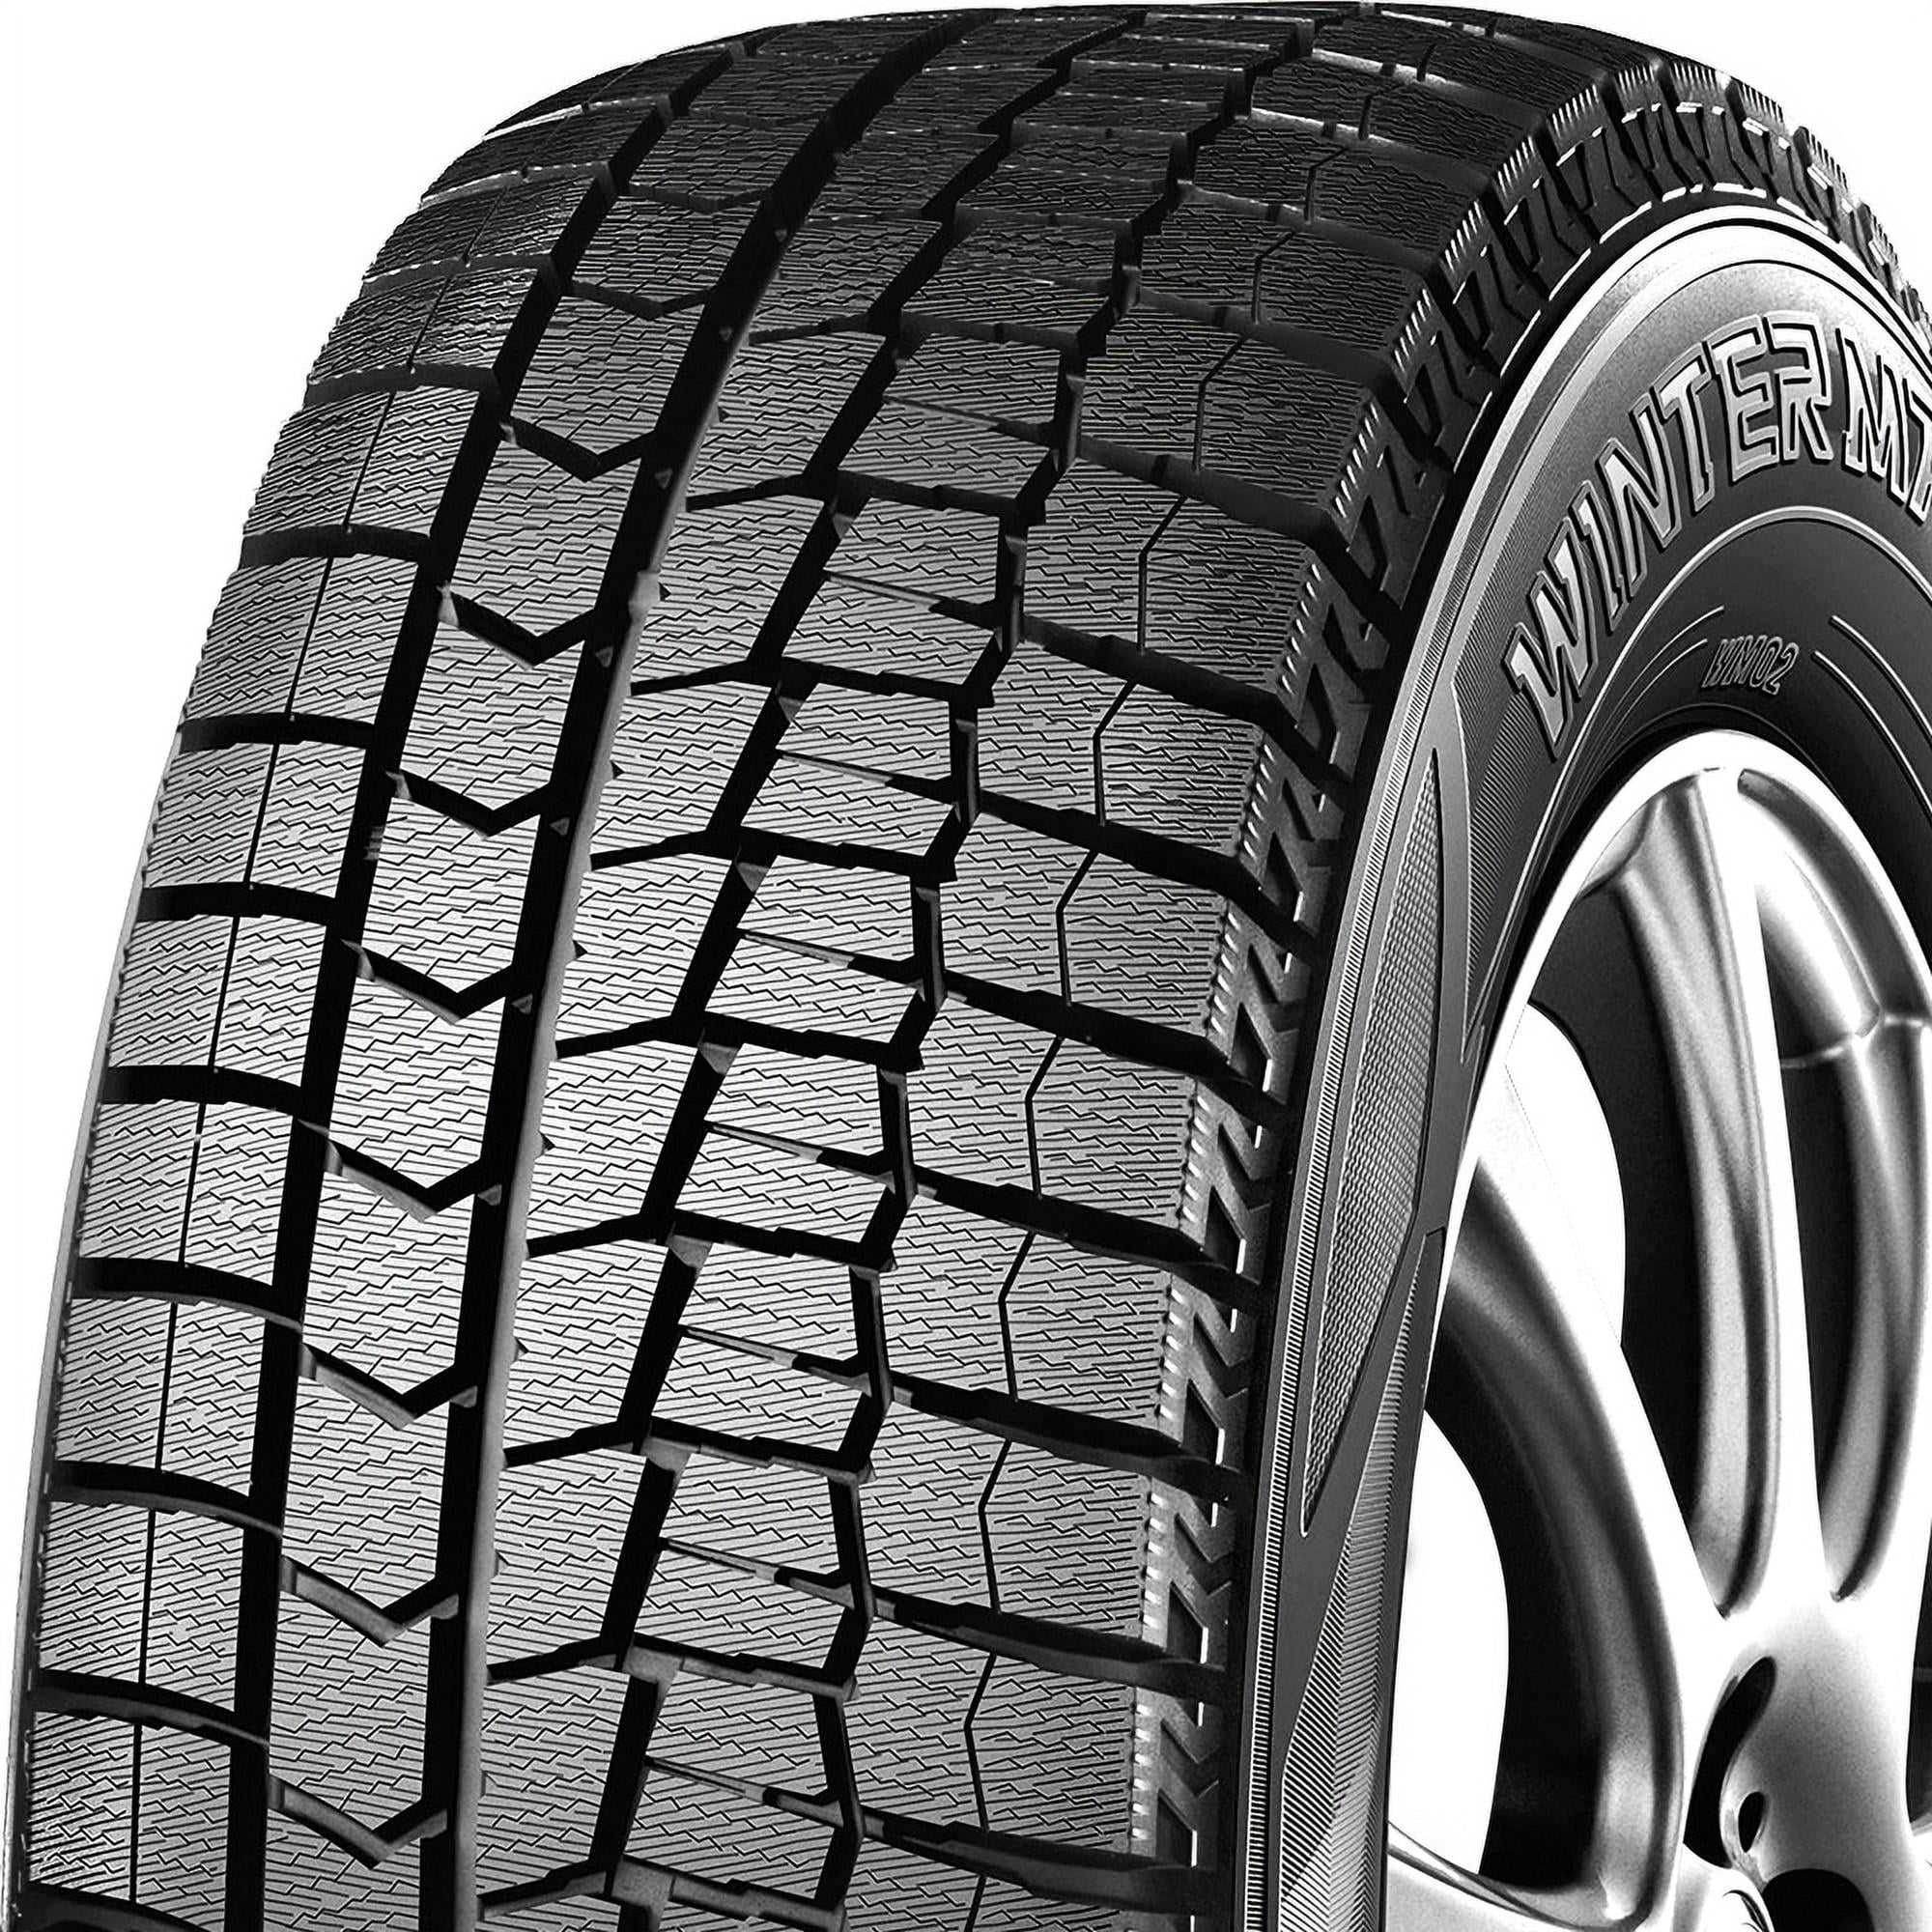 Dunlop winter maxx 2 P225/40R18 92T bsw winter tire Fits: 2014-16 Dodge  Dart GT, 2013 Dodge Dart R/T